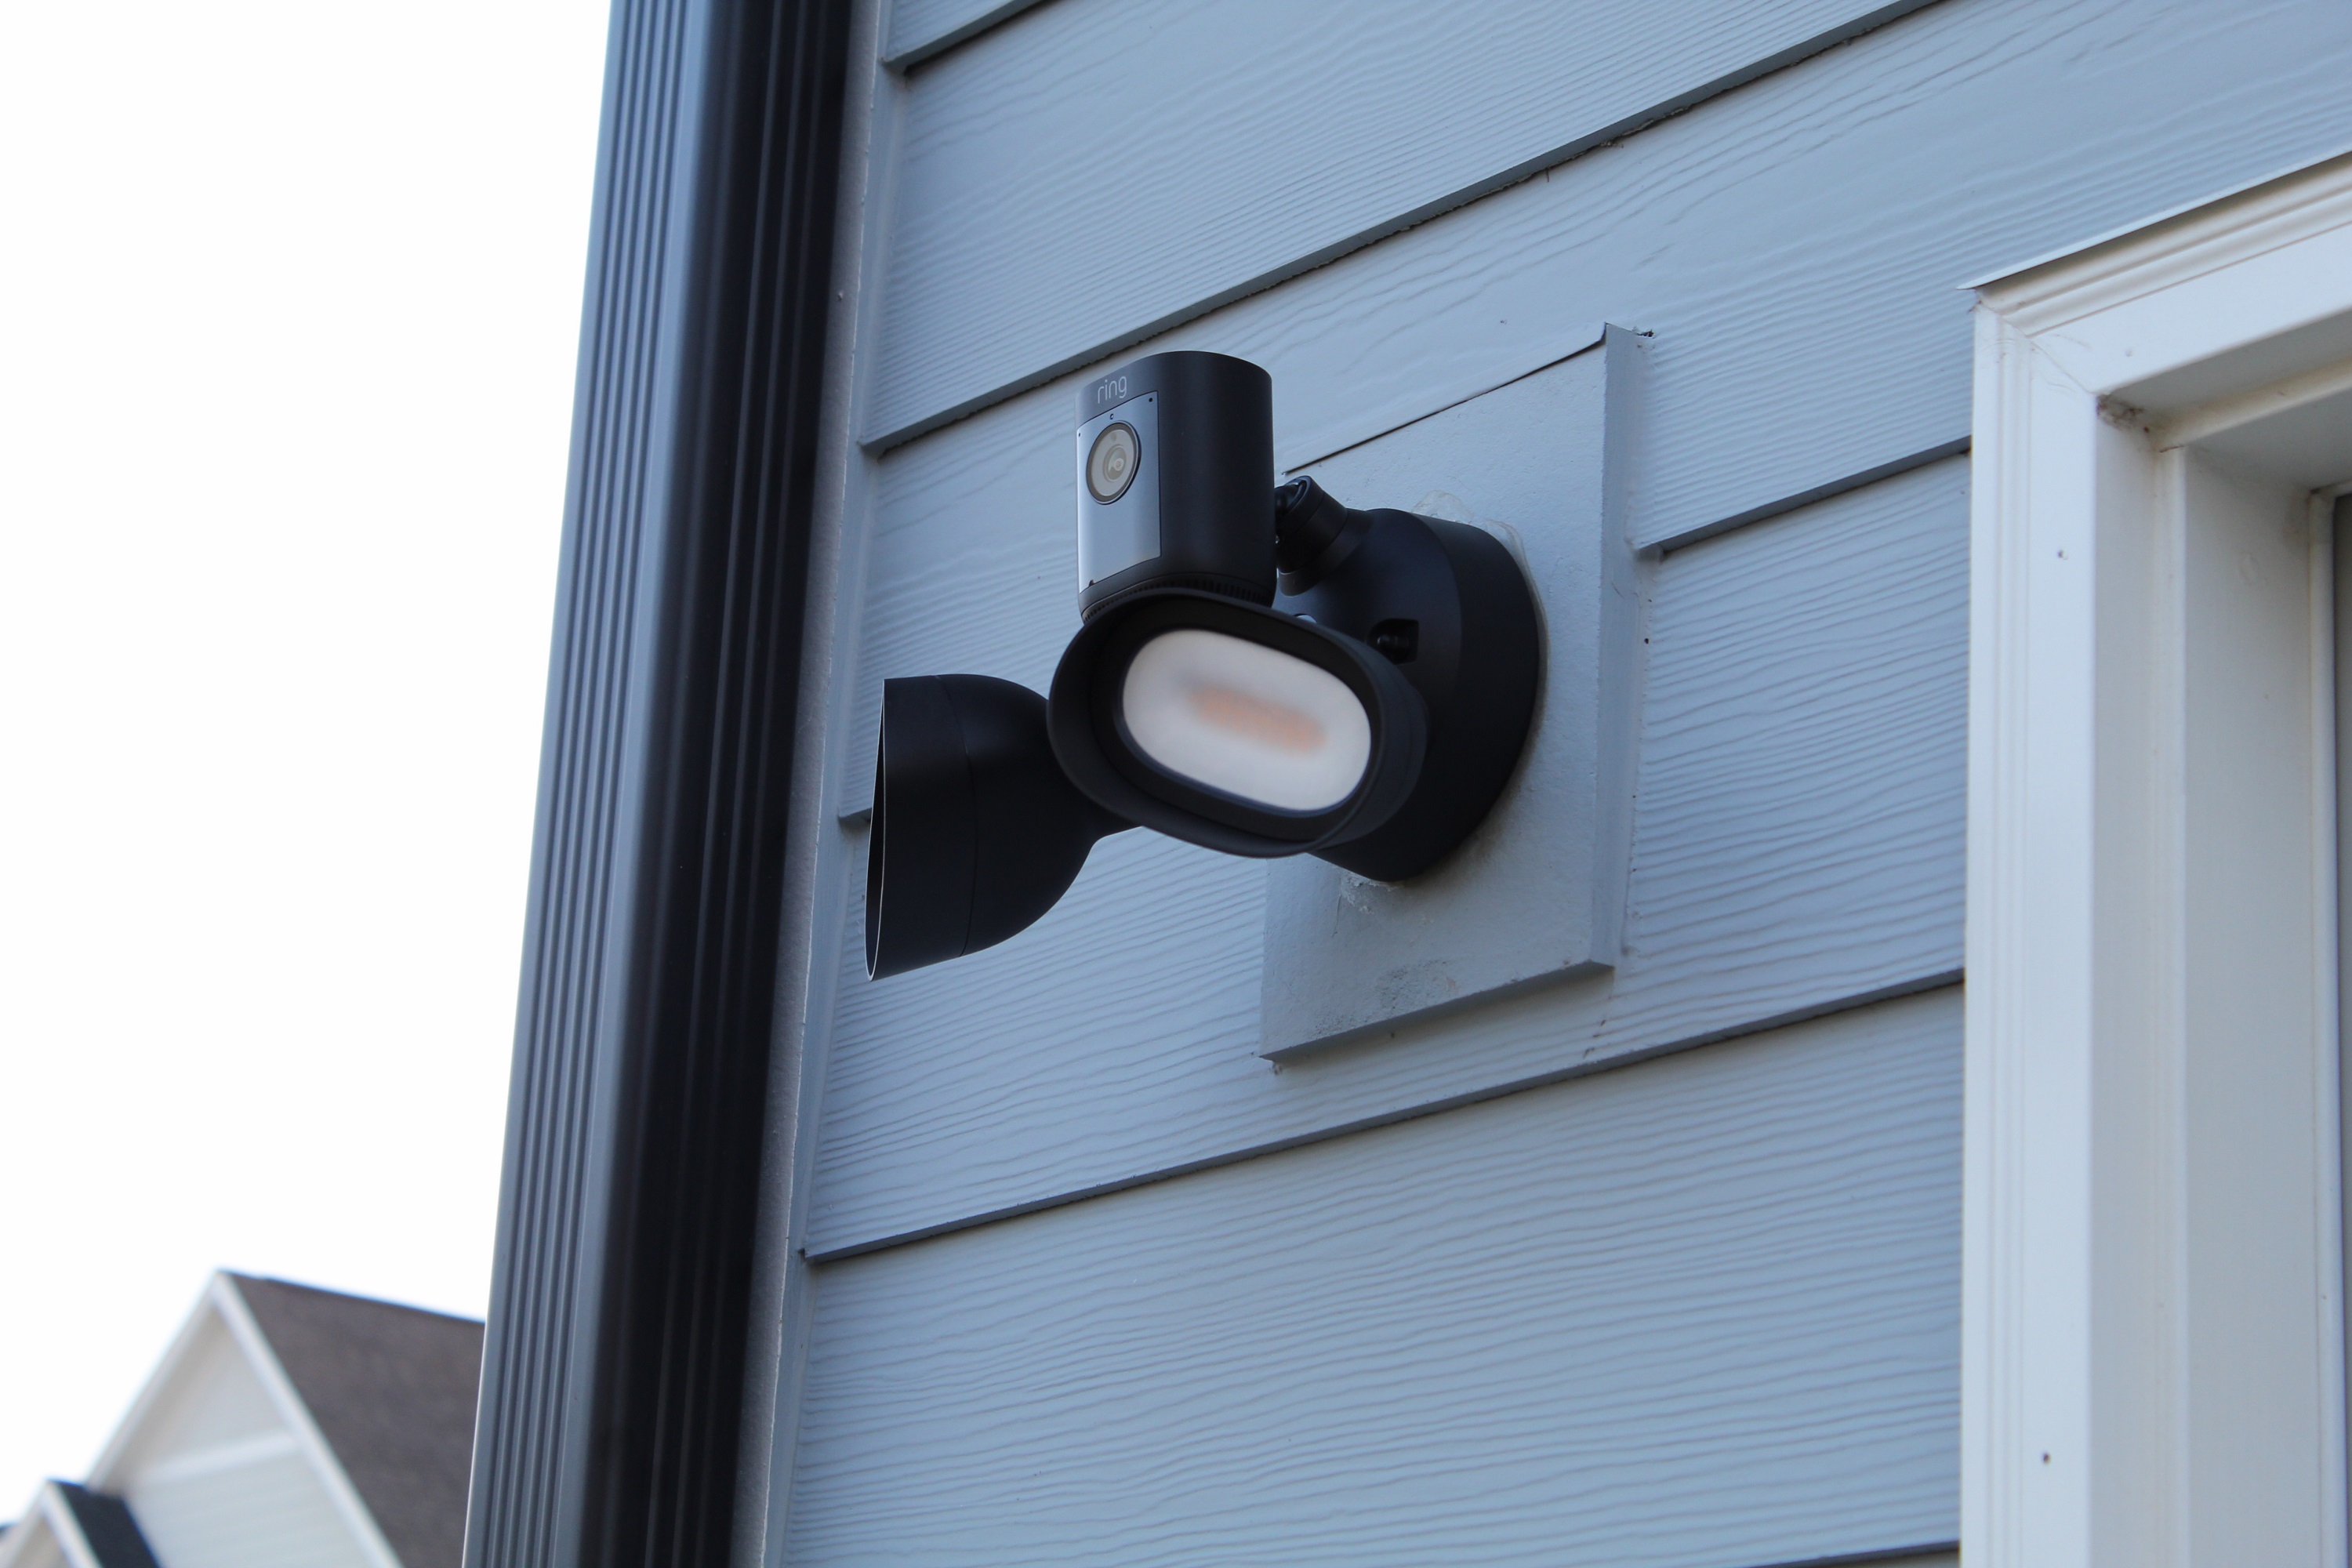 Ring Floodlight Cam Pro instalado na parte externa de uma casa.